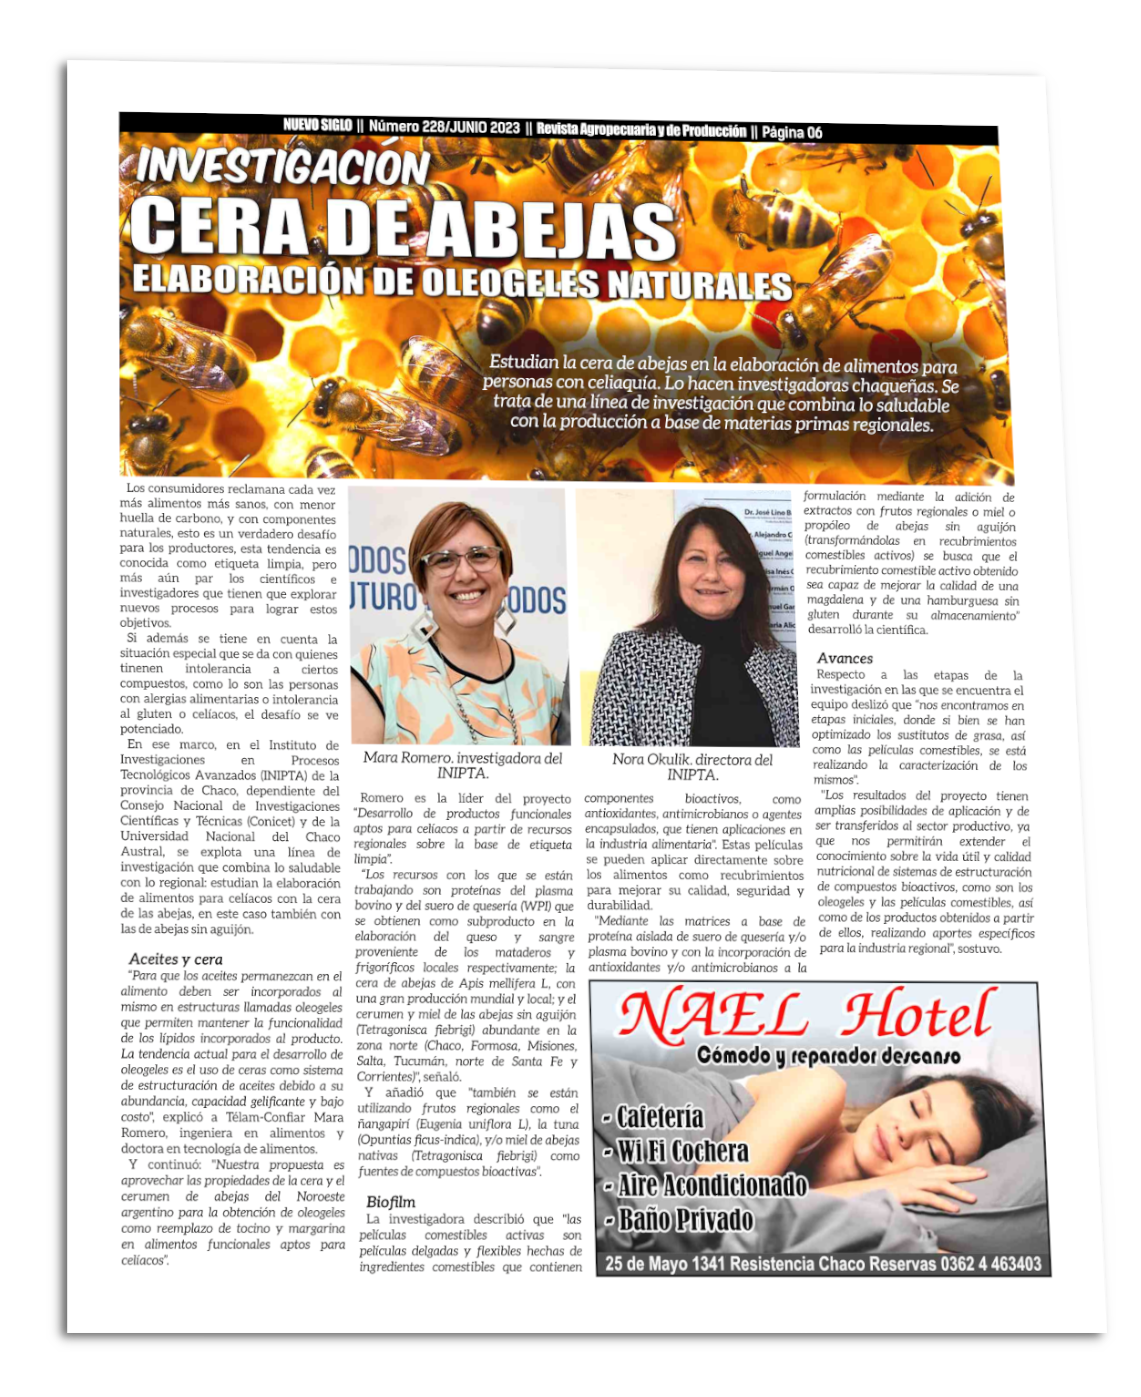 Fabrican oleogeles con cera de abejas en Chaco, Página 06 de la Revista Agropecuaria Nuevo Sigo Junio 2023